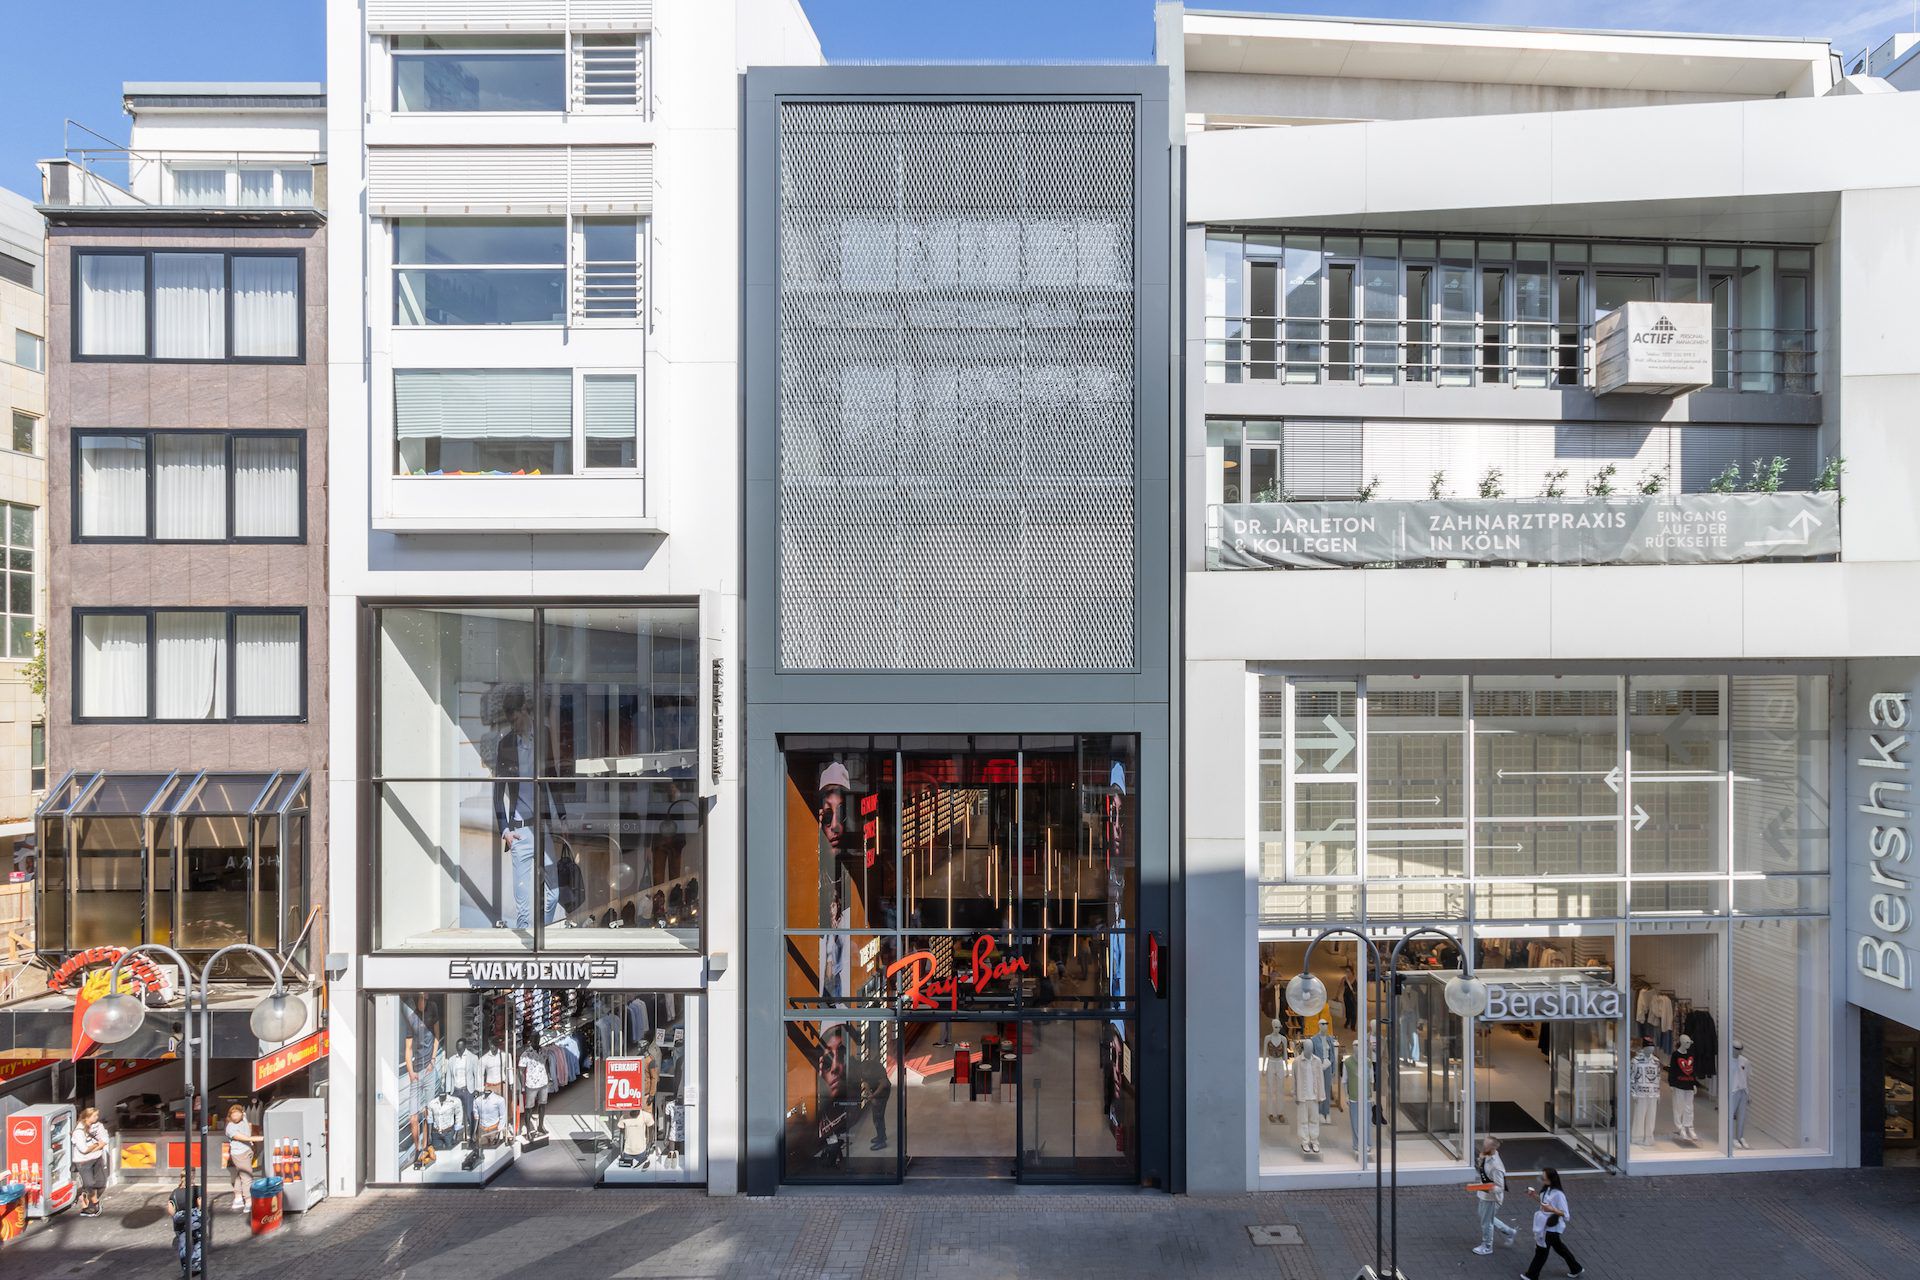 Generalsanierung auf engstem Raum: Revitalisierung eines Geschäftshauses in der Kölner Schildergasse